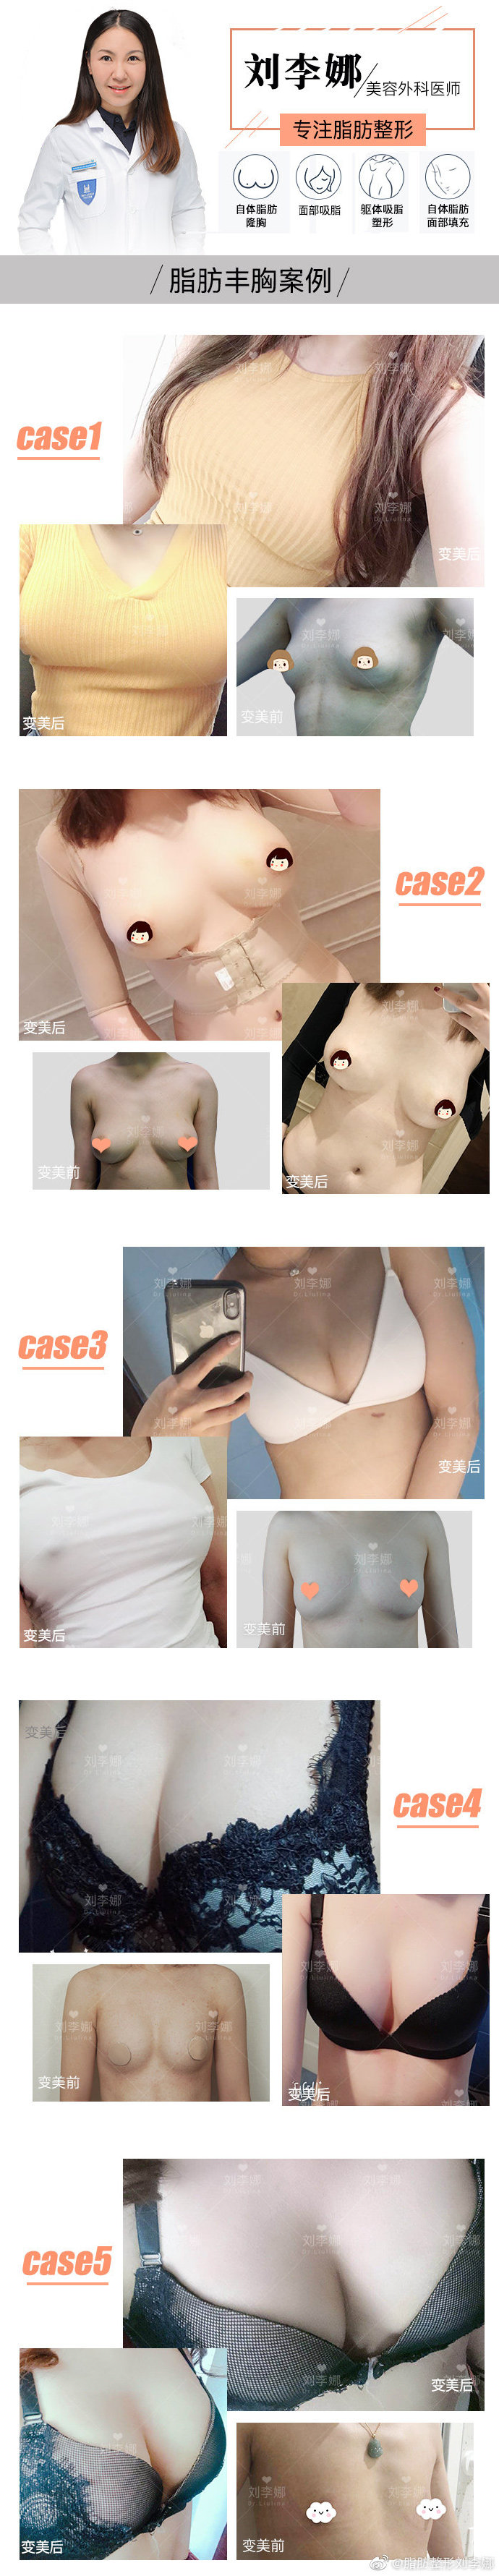 刘李娜自体脂肪隆胸案例